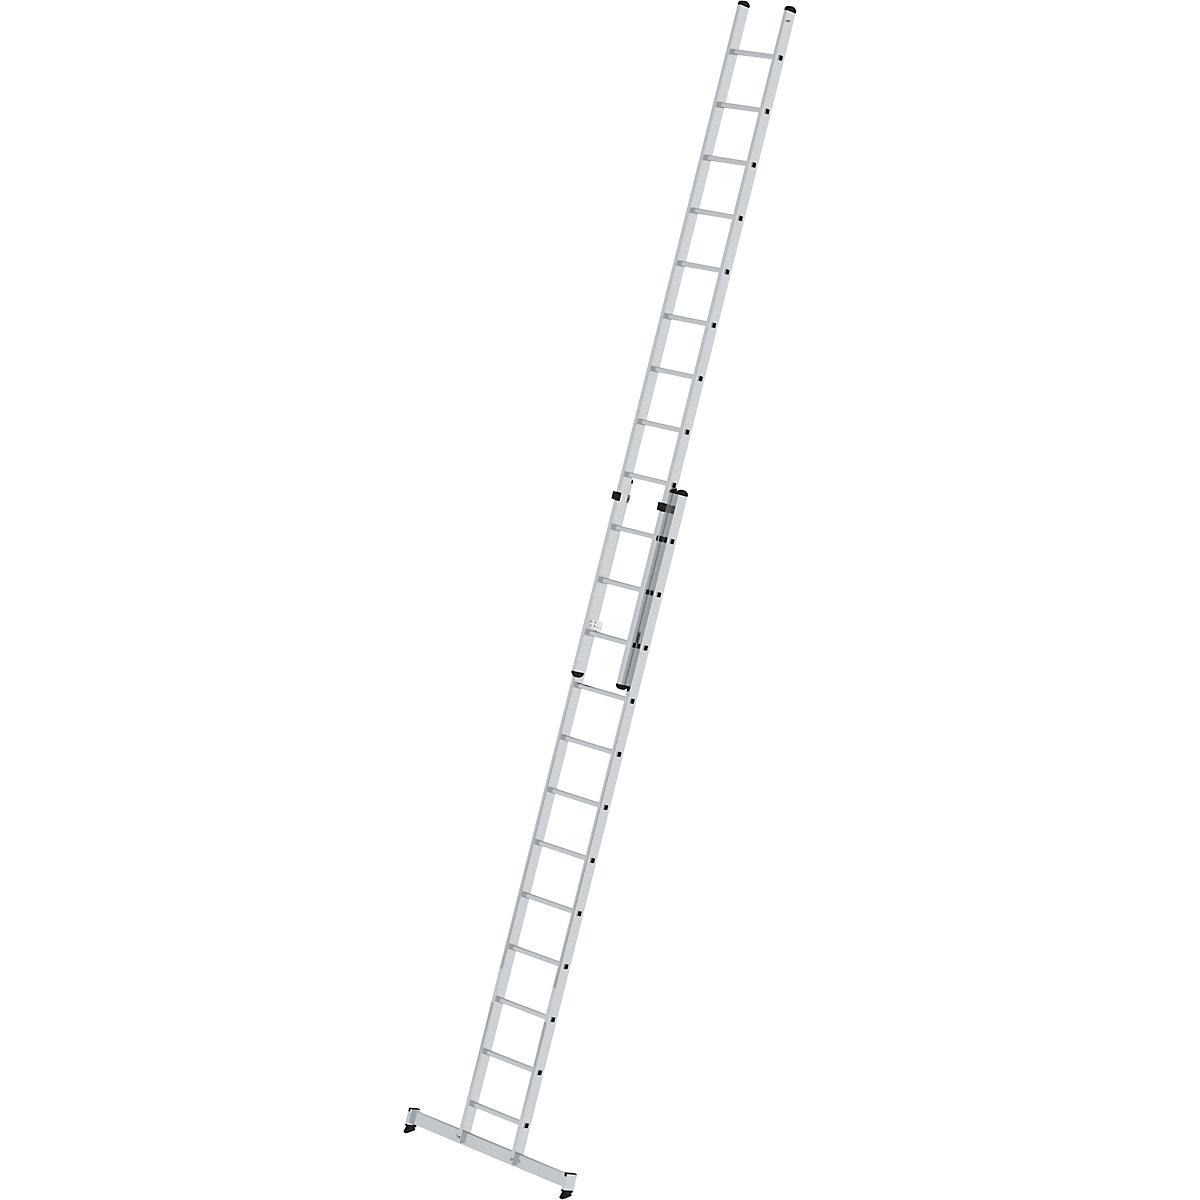 Višinsko nastavljiva prislonska lestev – MUNK, pomična lestev, 2-delna, 2 x 12 klinov, s prečko nivello®-8